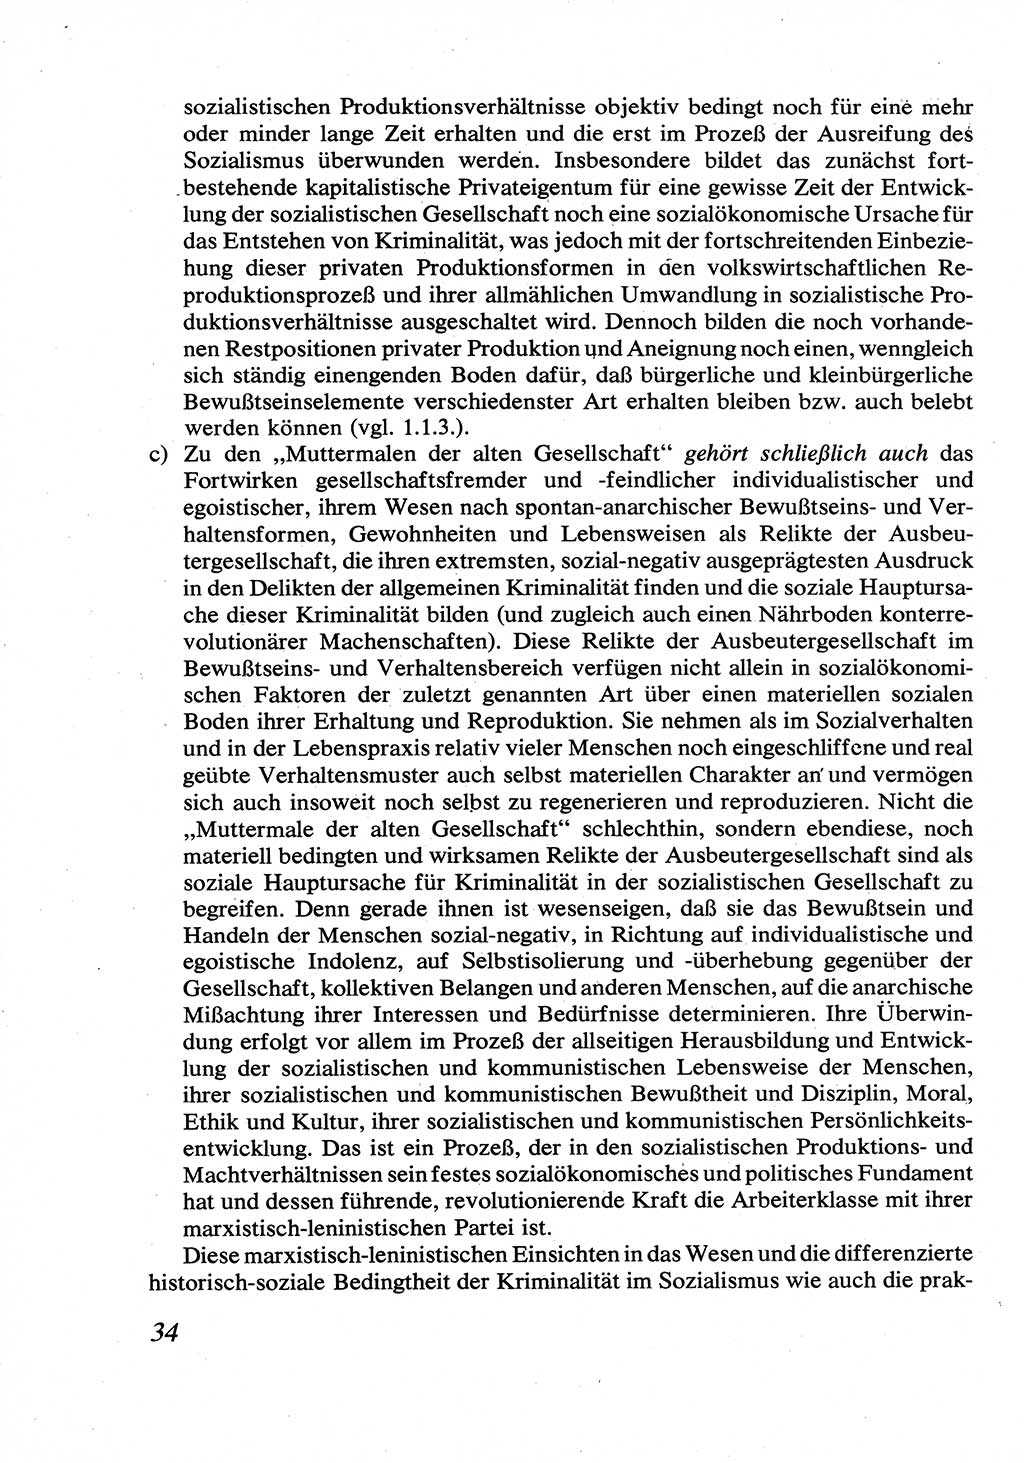 Strafrecht [Deutsche Demokratische Republik (DDR)], Allgemeiner Teil, Lehrbuch 1976, Seite 34 (Strafr. DDR AT Lb. 1976, S. 34)